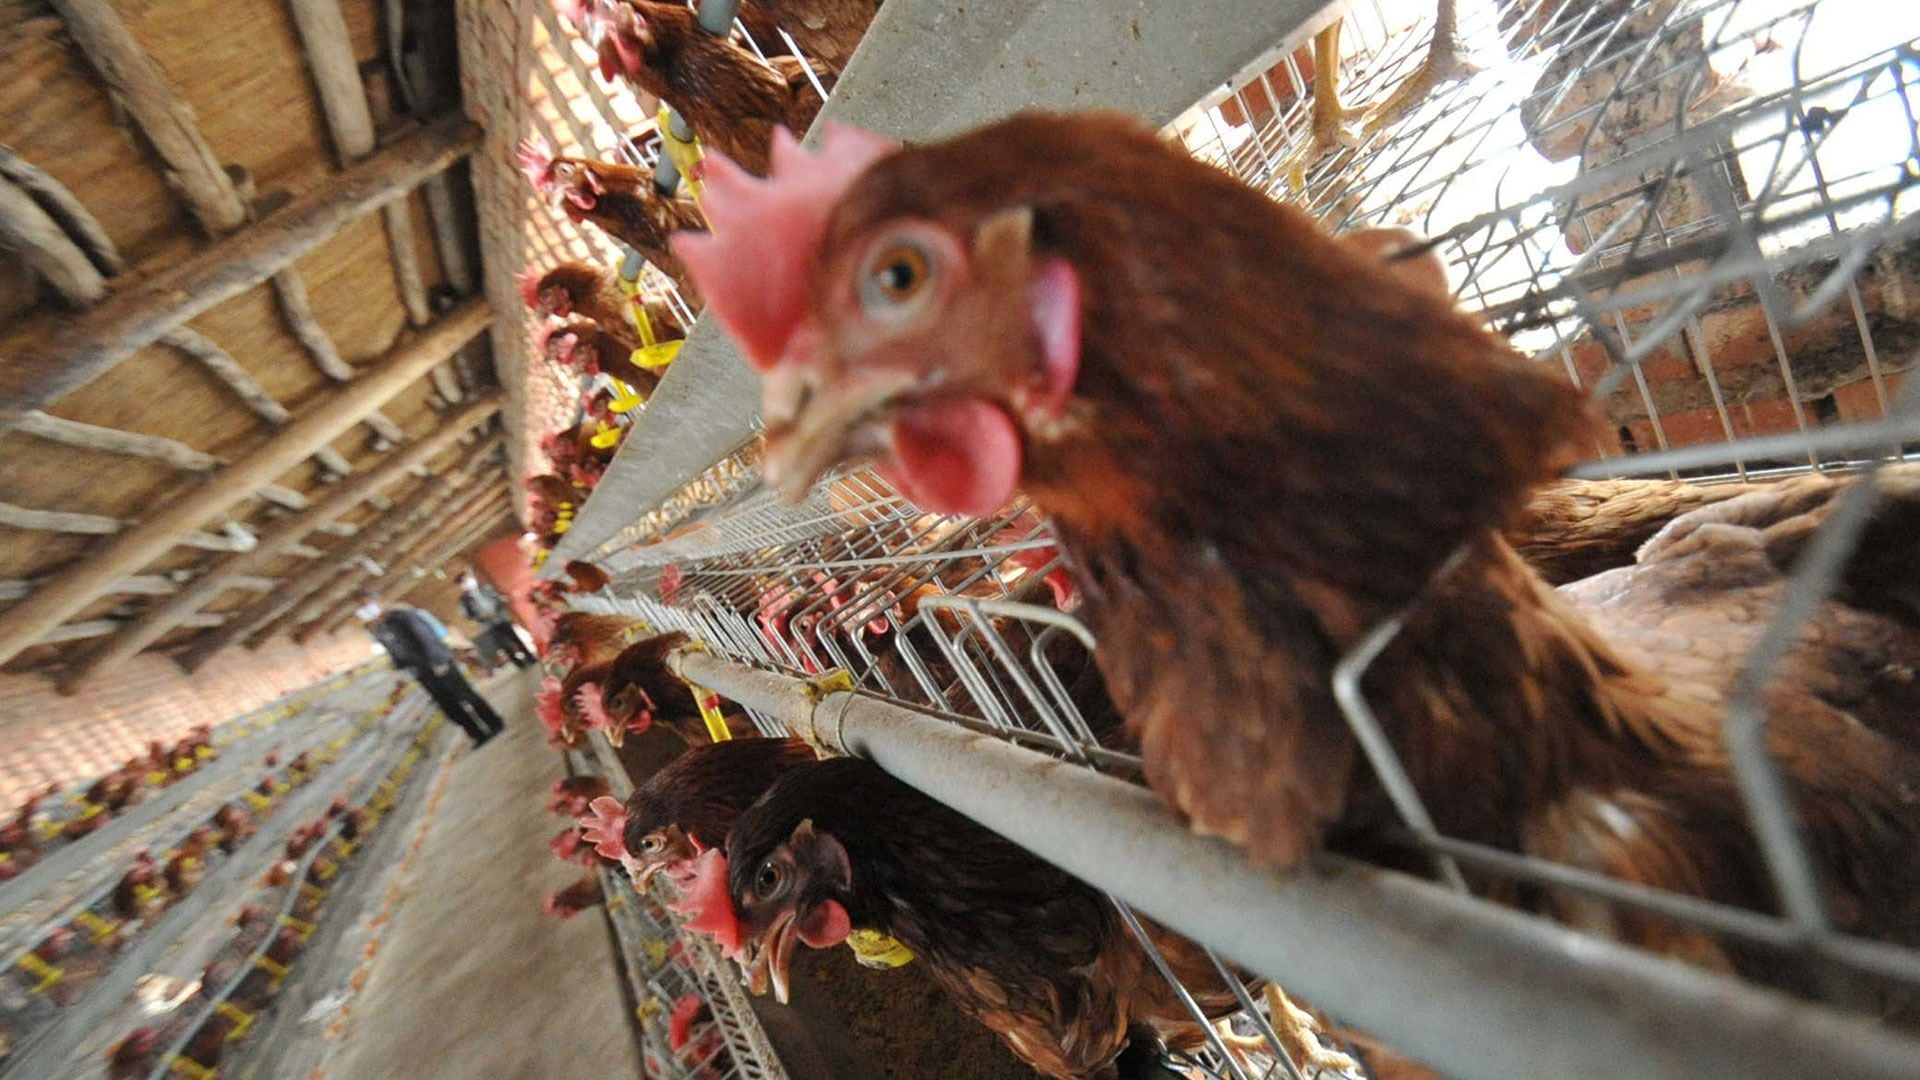 La OMS y la Organización Mundial de Sanidad alertaron en julio pasado que los brotes de gripe aviar planteaban riesgos para los humanos (Getty Images)